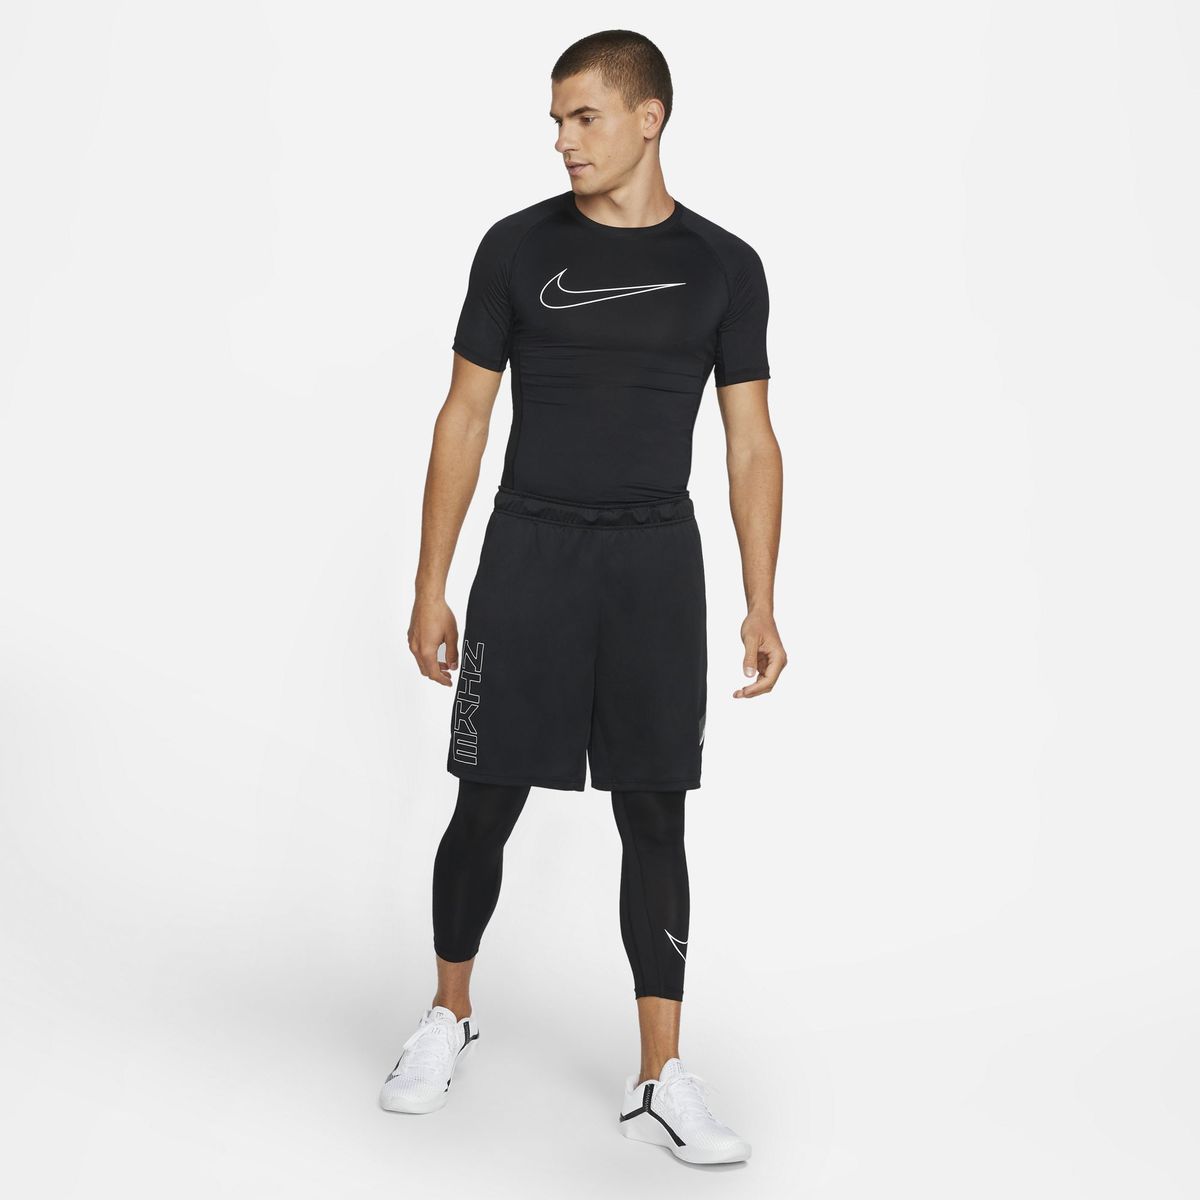 Nike Pro Dri-FIT Tight Fit Top Herren T-Shirt_1